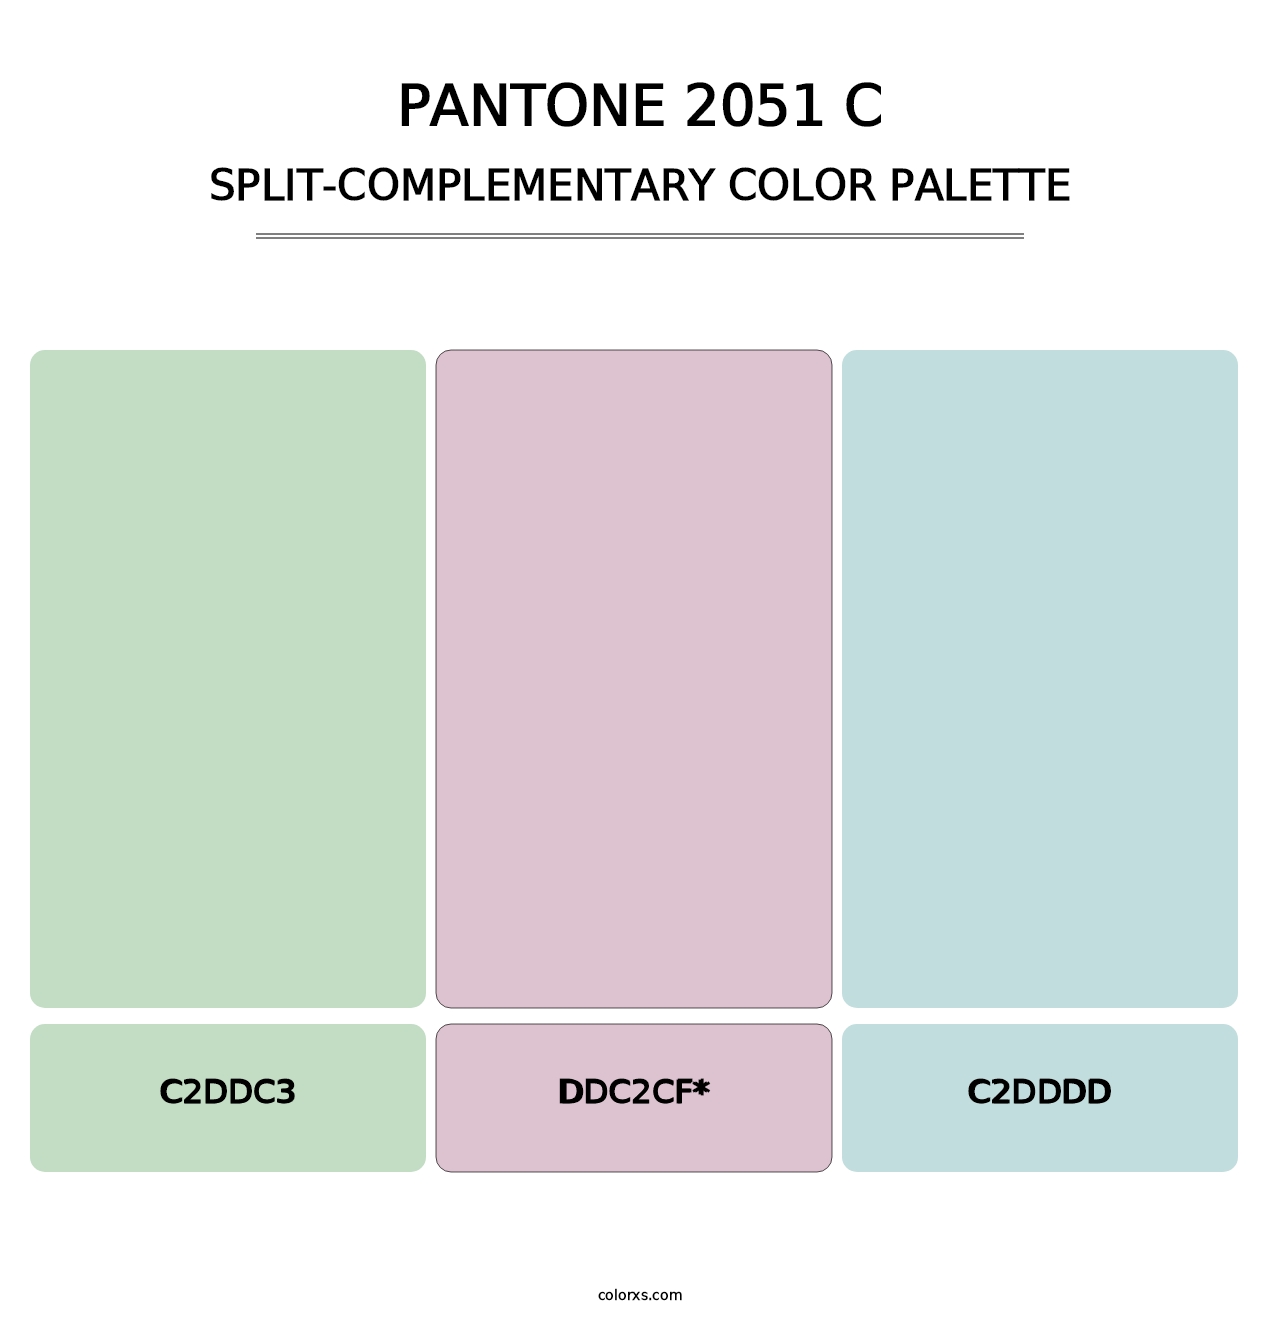 PANTONE 2051 C - Split-Complementary Color Palette